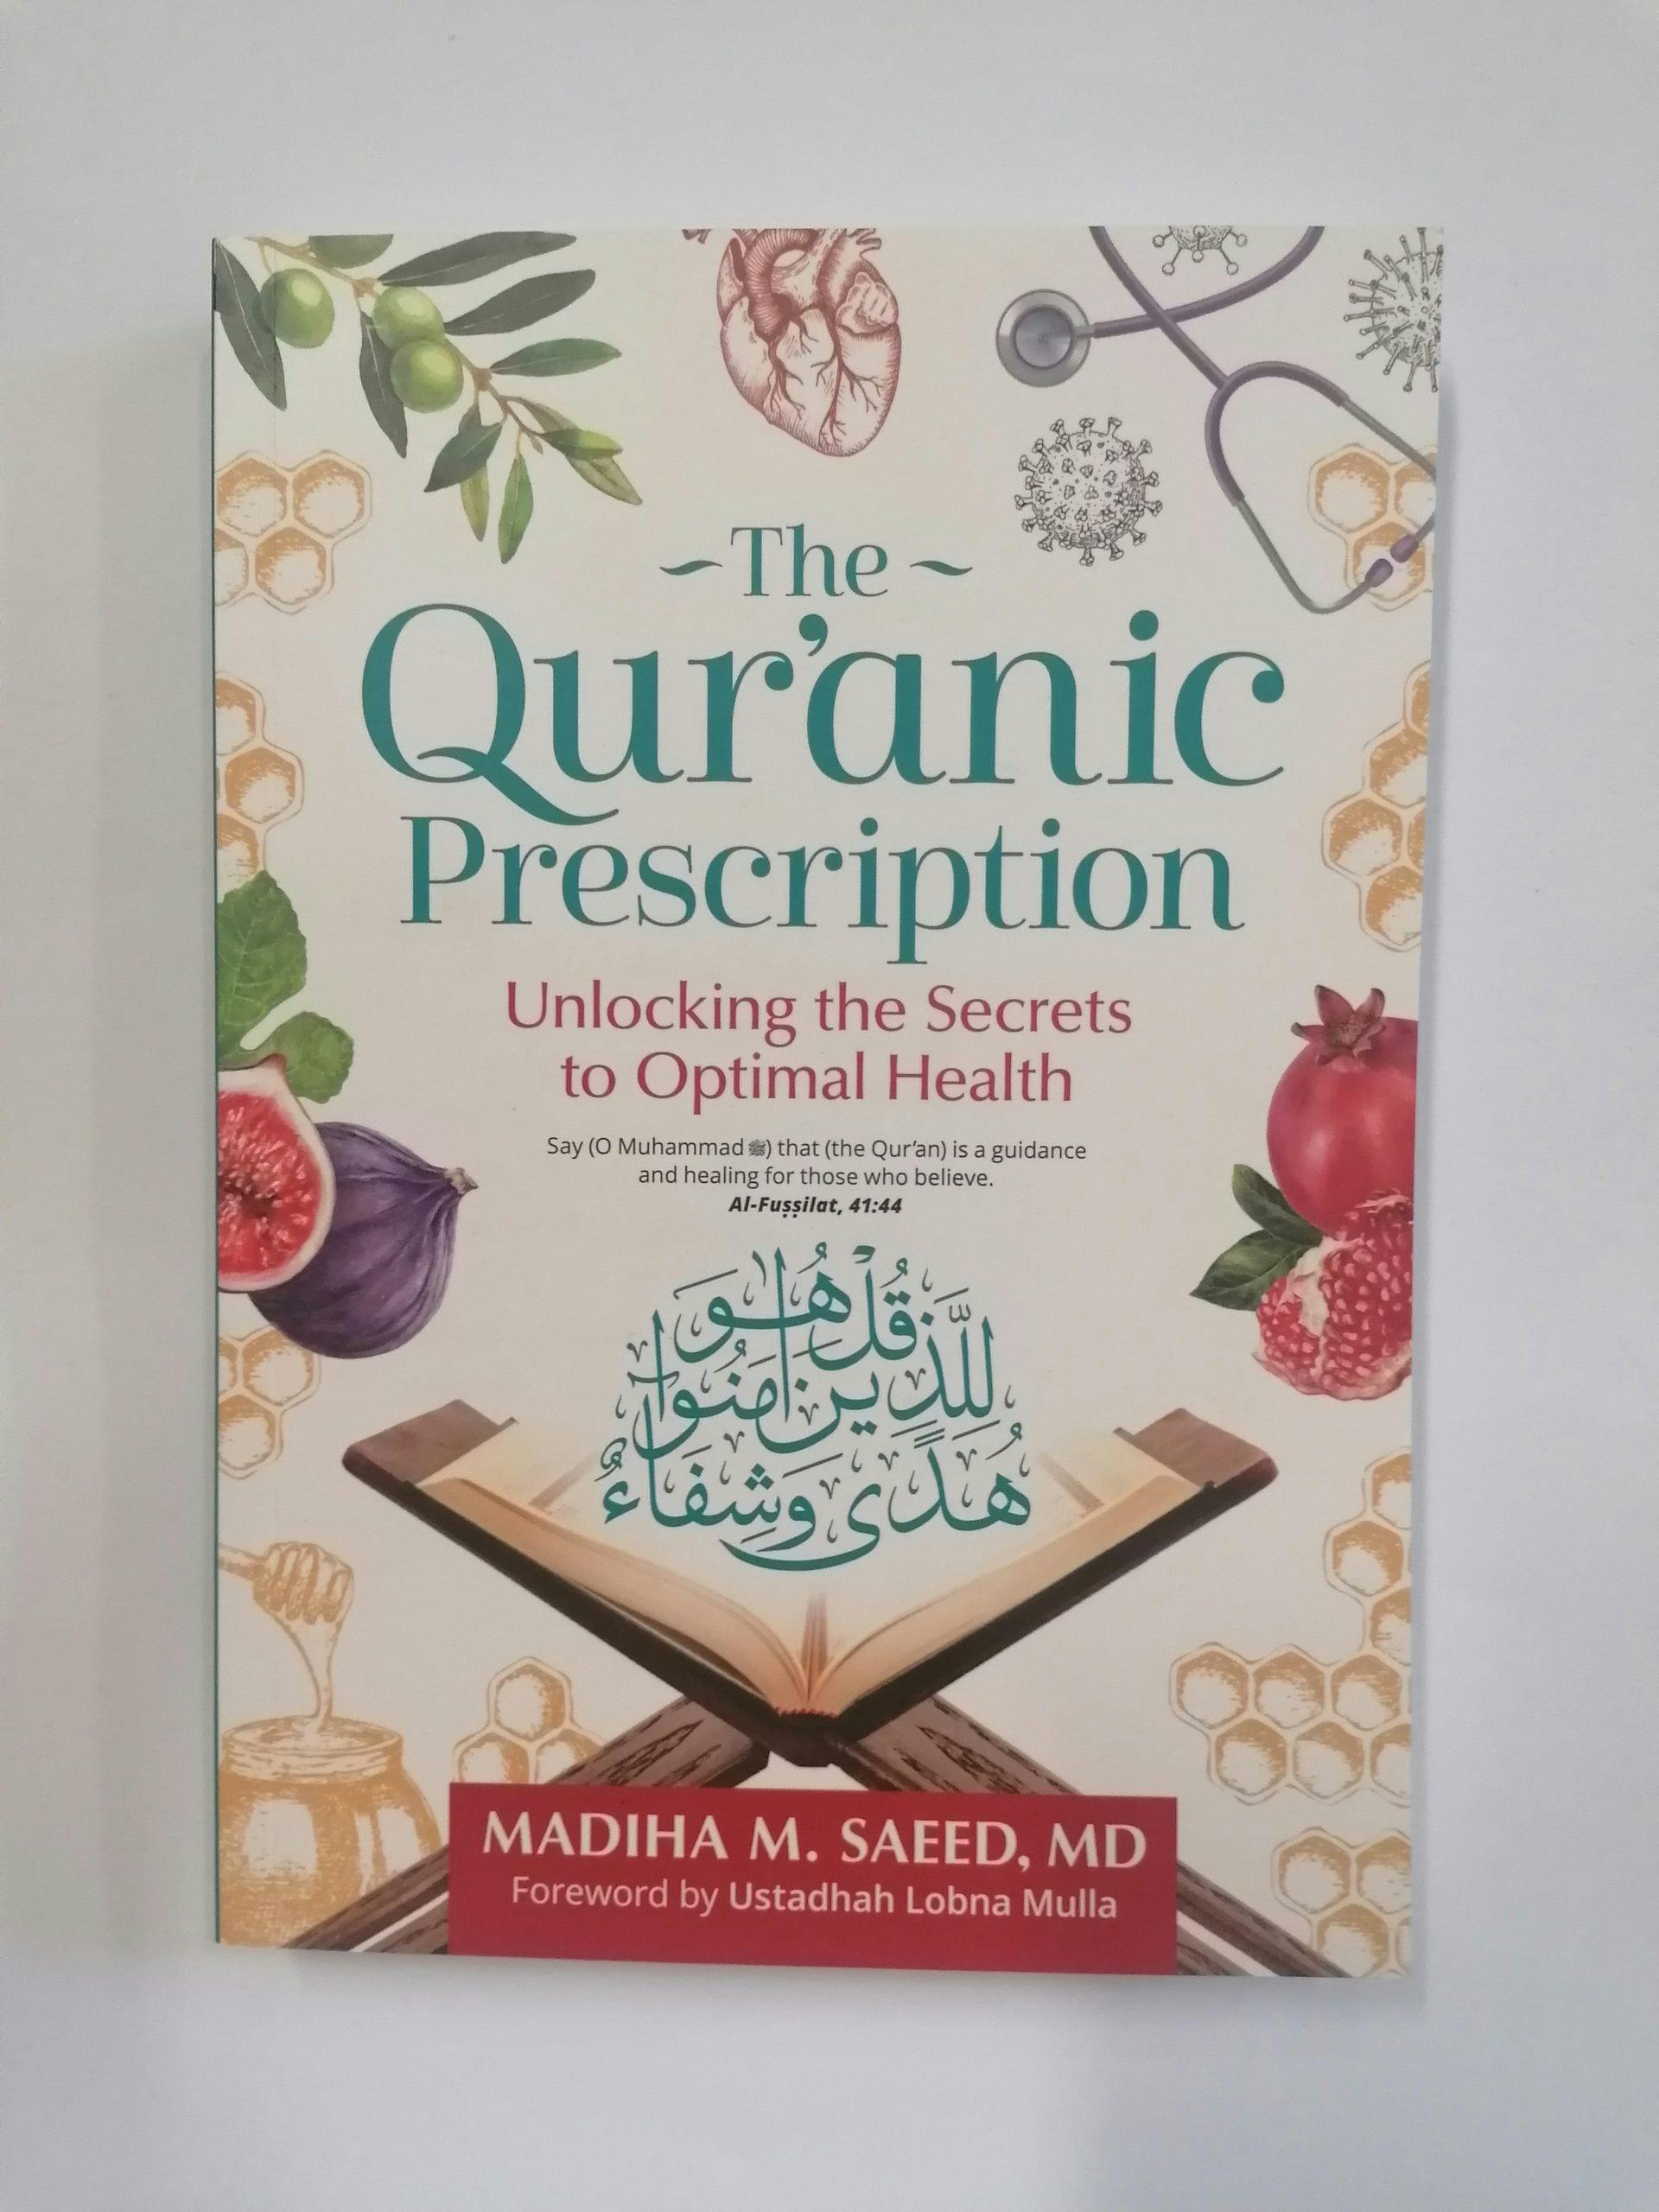 The Quranic Prescription